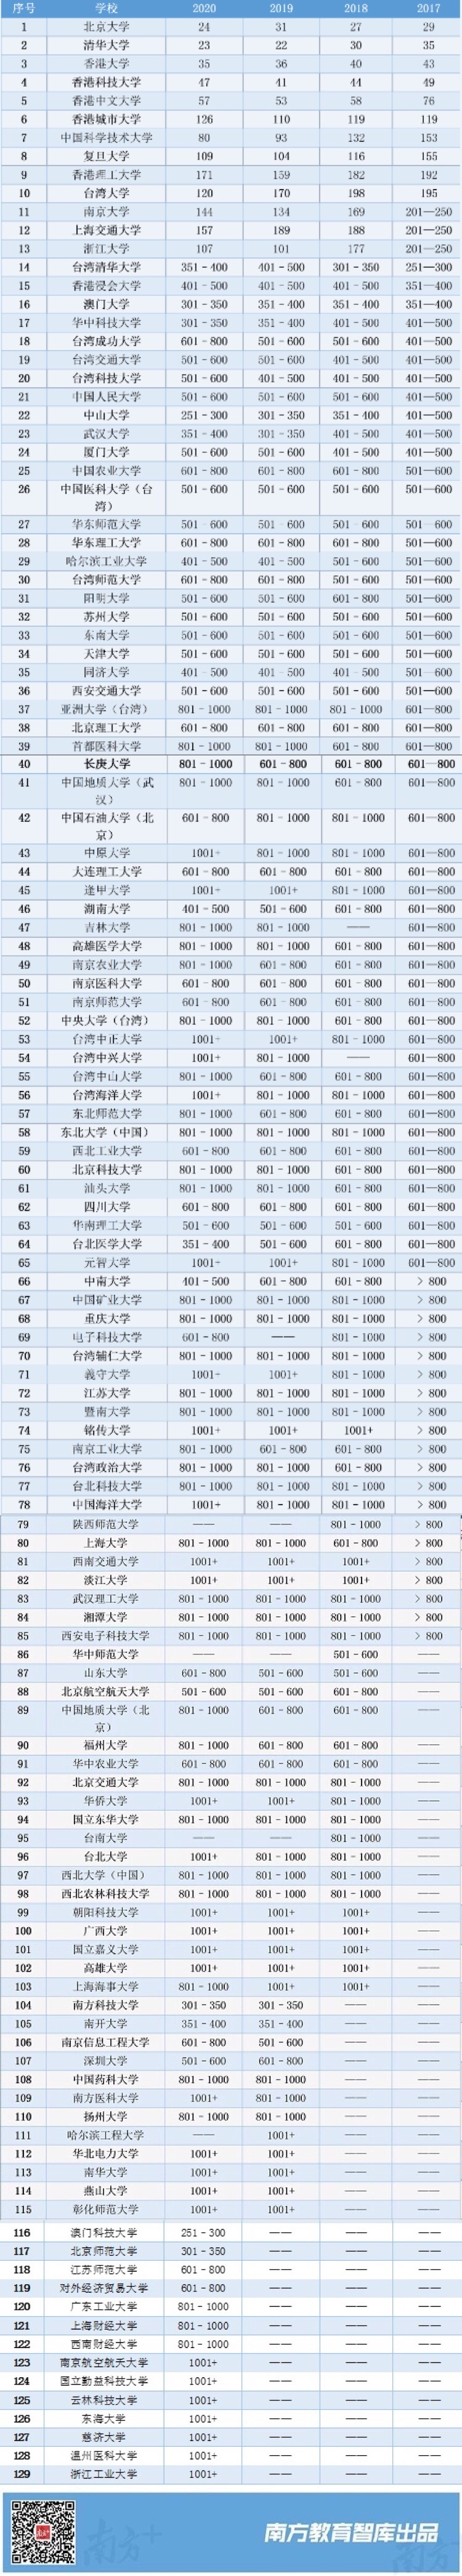 2017-2020年THE Ranking中国大学排名。